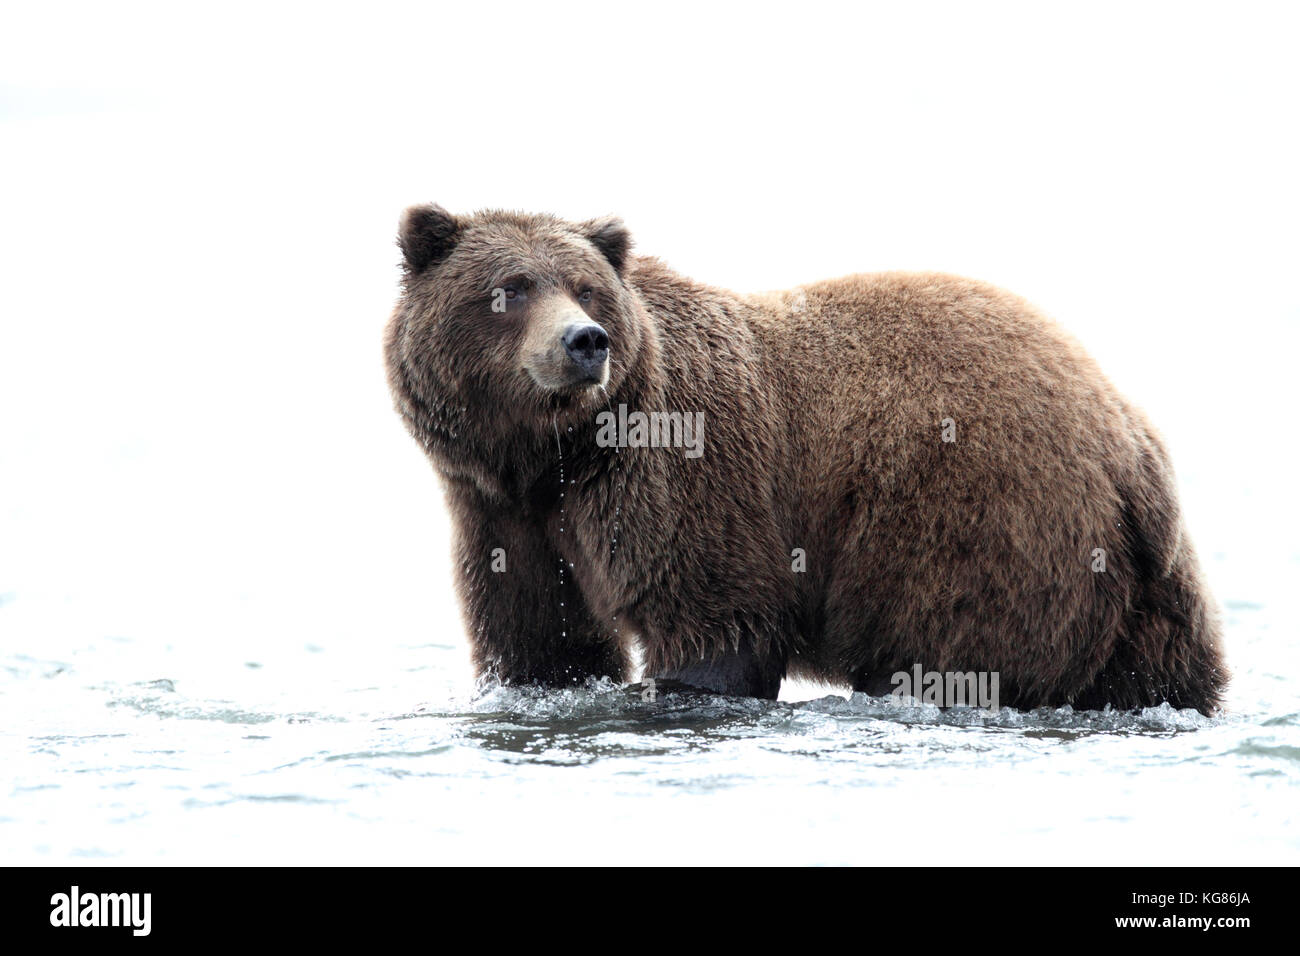 Un regal closeup portrait d'un ours brun, l'alaska ou grizzly, debout dans l'eau de la côte de l'alaska avec un arrière-plan blanc high key. Banque D'Images